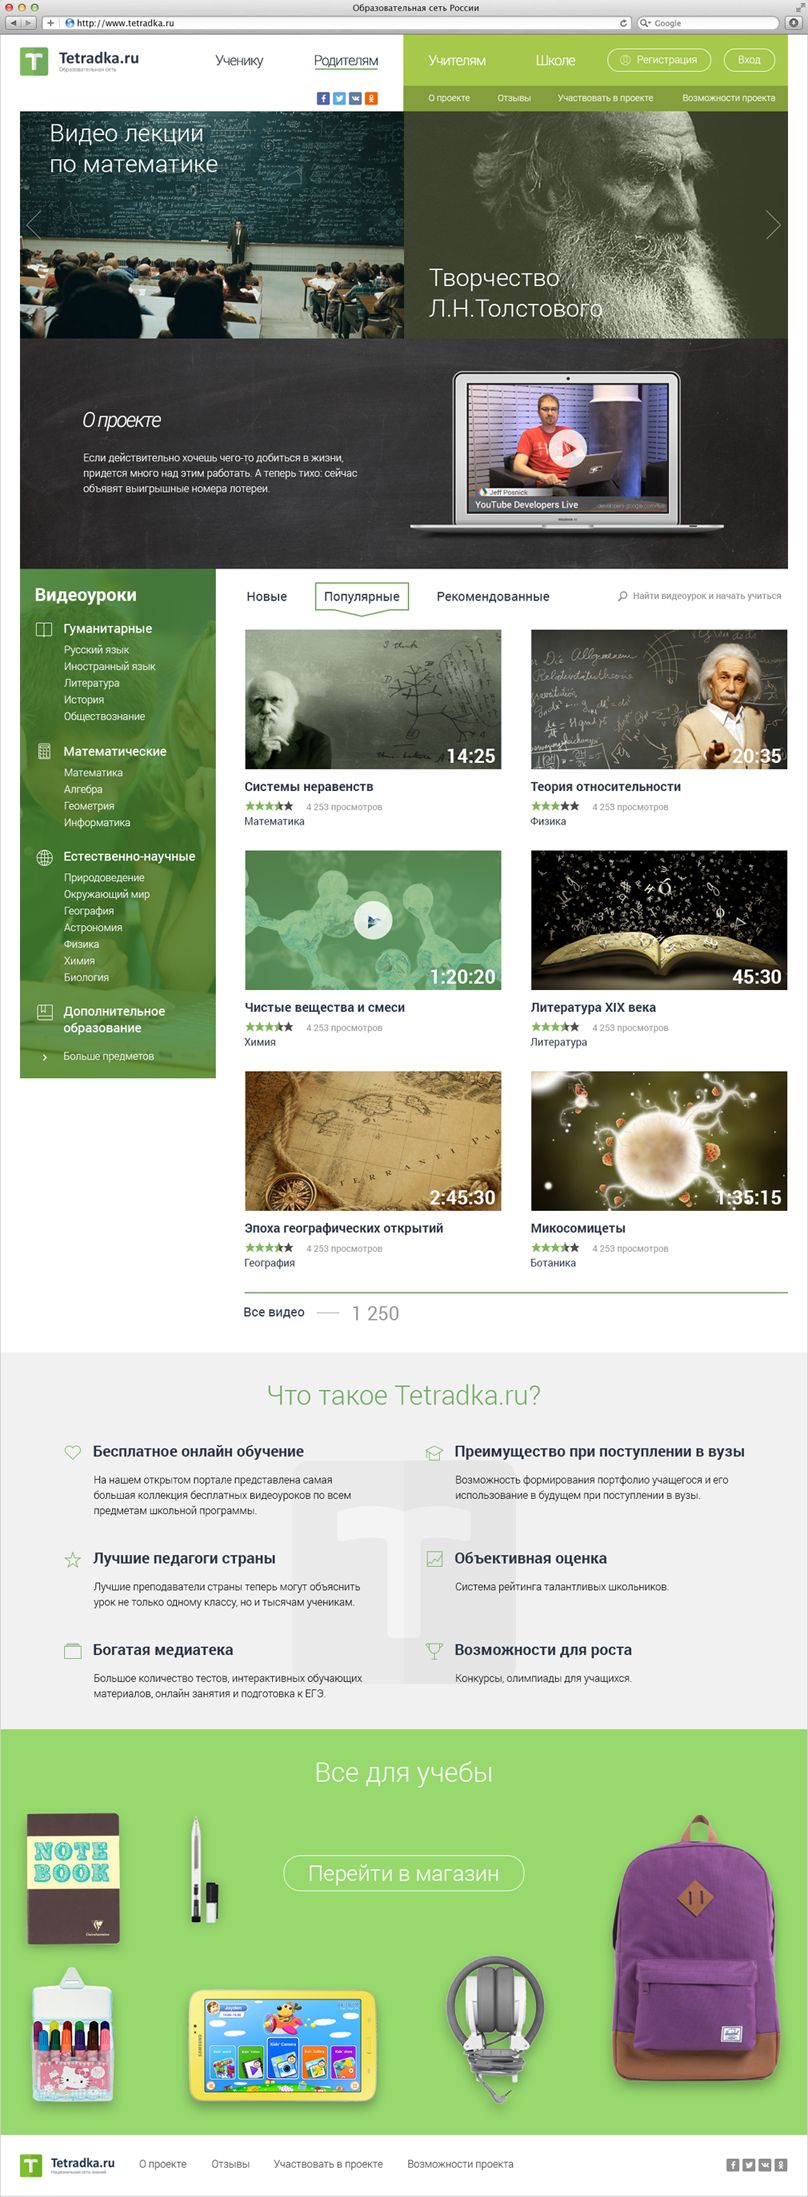 Главная страница образовательной сети tetradka.ru - дизайнер MonolithAgency